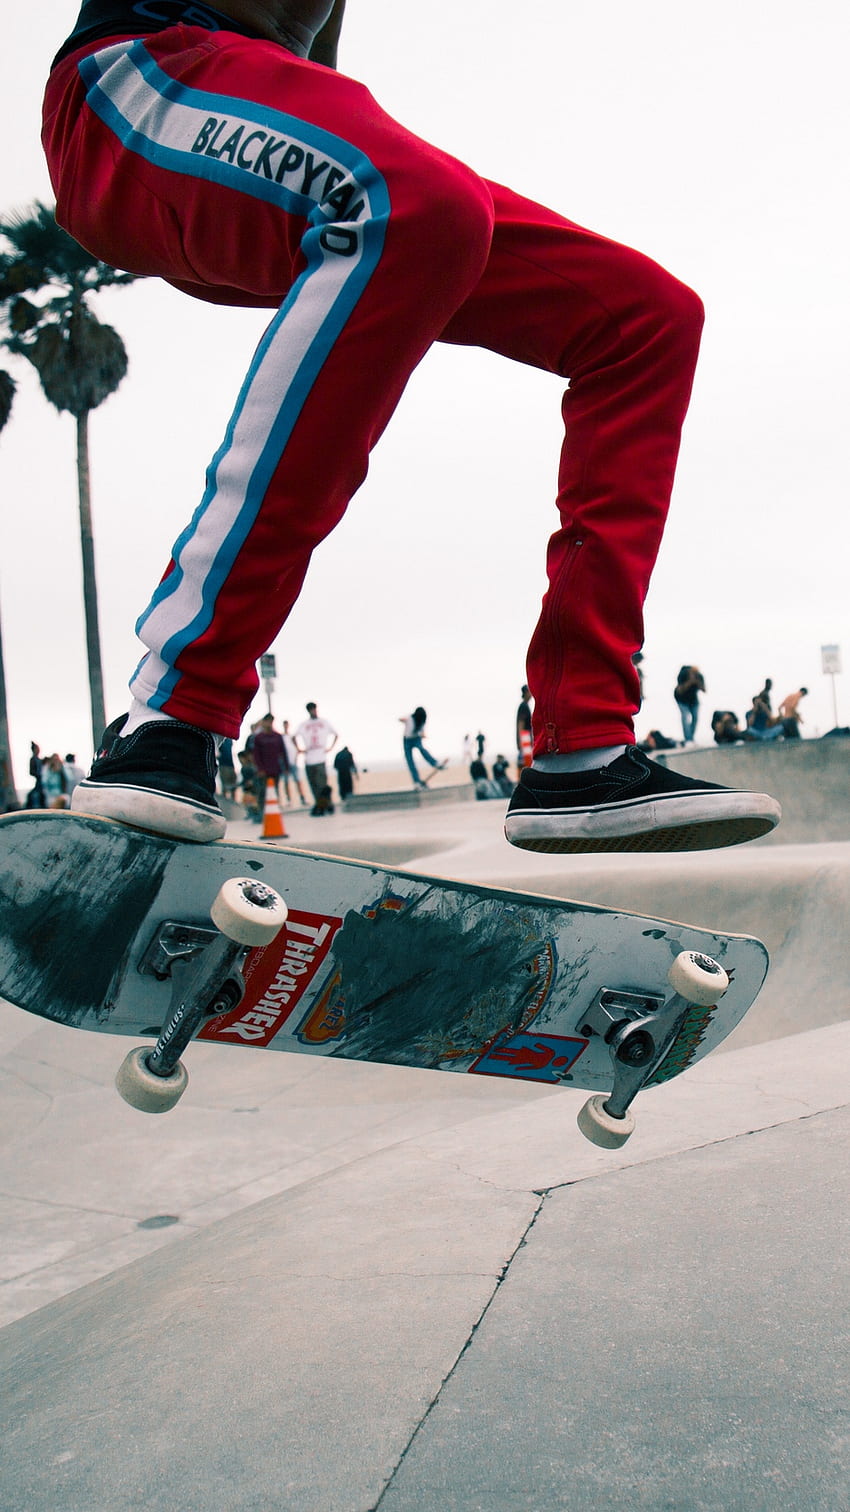 Skate, Skater, Jump, Trick, Skate Park, Venice - Skate Background, Skateboarding iPhone HD phone wallpaper